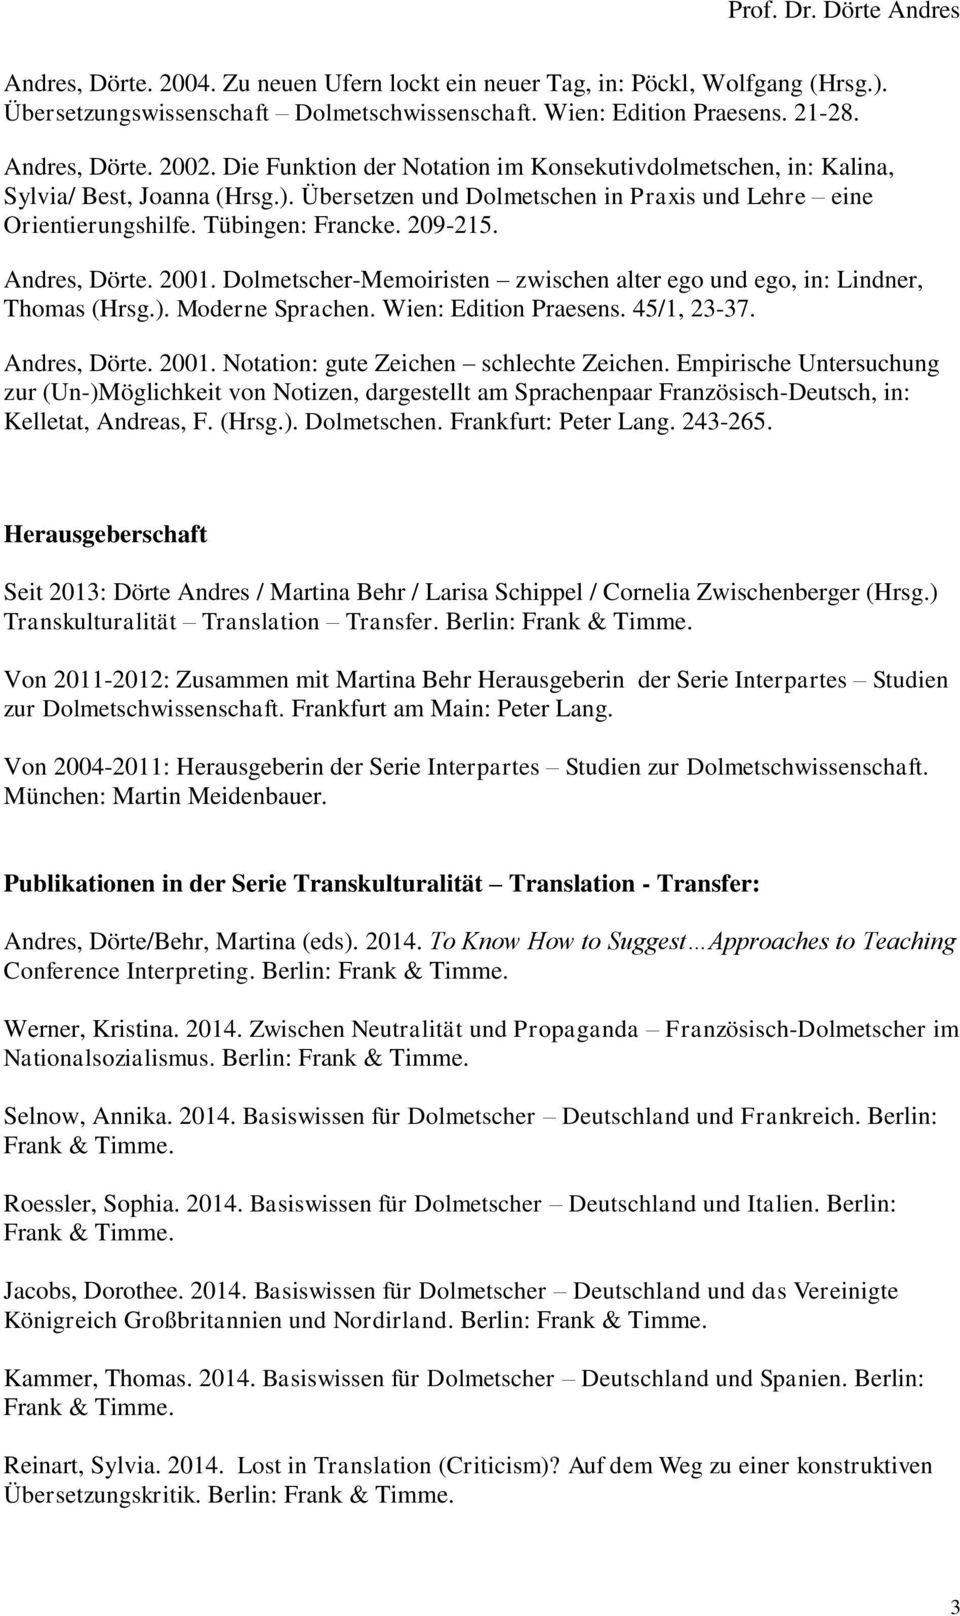 Andres, Dörte. 2001. Dolmetscher-Memoiristen zwischen alter ego und ego, in: Lindner, Thomas (Hrsg.). Moderne Sprachen. Wien: Edition Praesens. 45/1, 23-37. Andres, Dörte. 2001. Notation: gute Zeichen schlechte Zeichen.